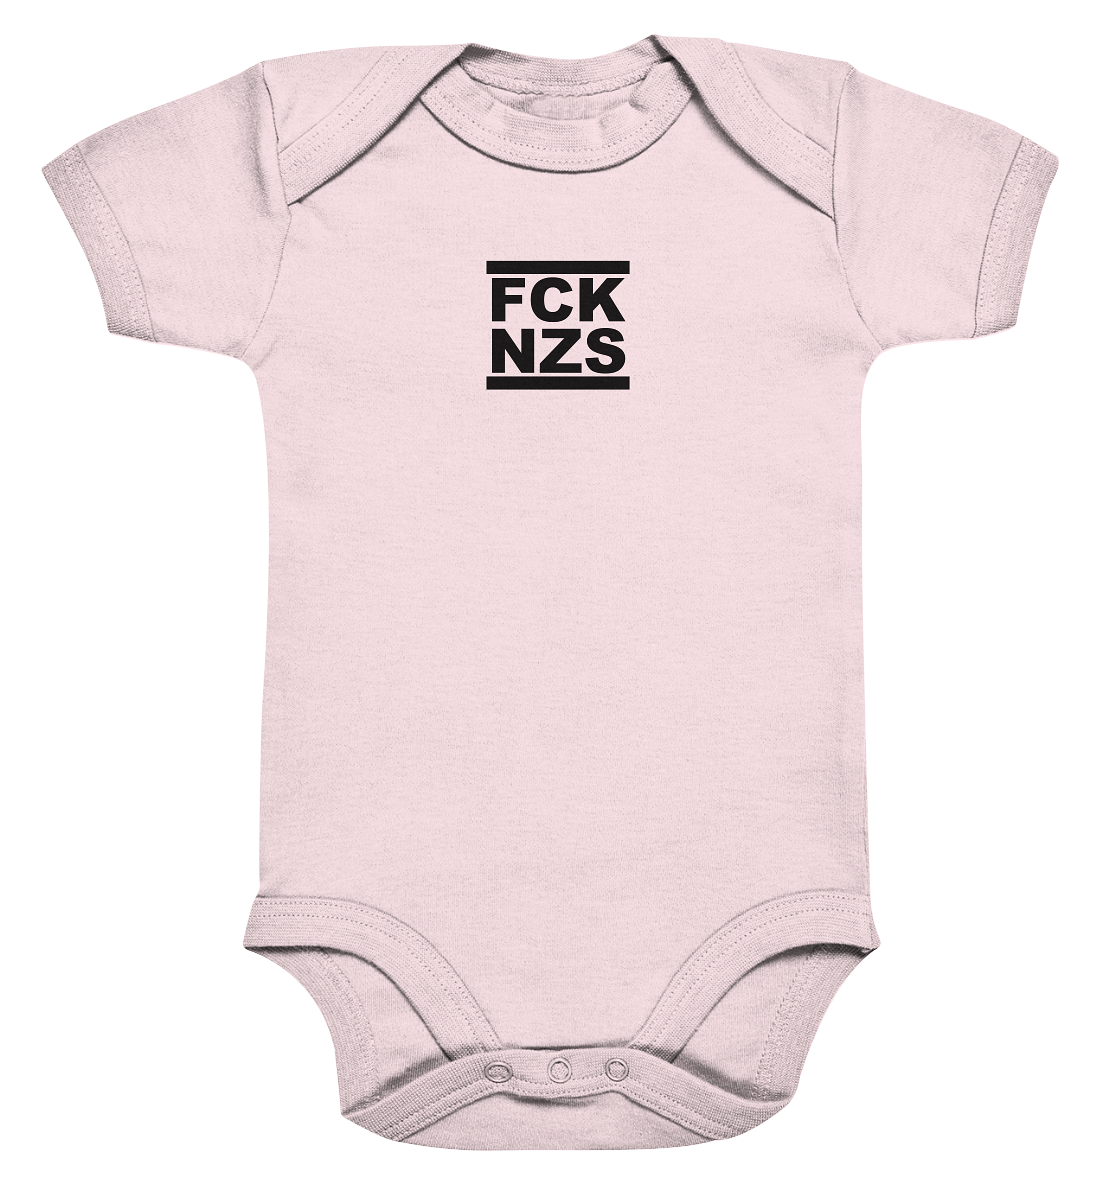 N.O.S.W. BLOCK Gegen Rechts Hoodie "FCK NZS" beidseitig bedruckter Organic Baby Bodysuite powder pink